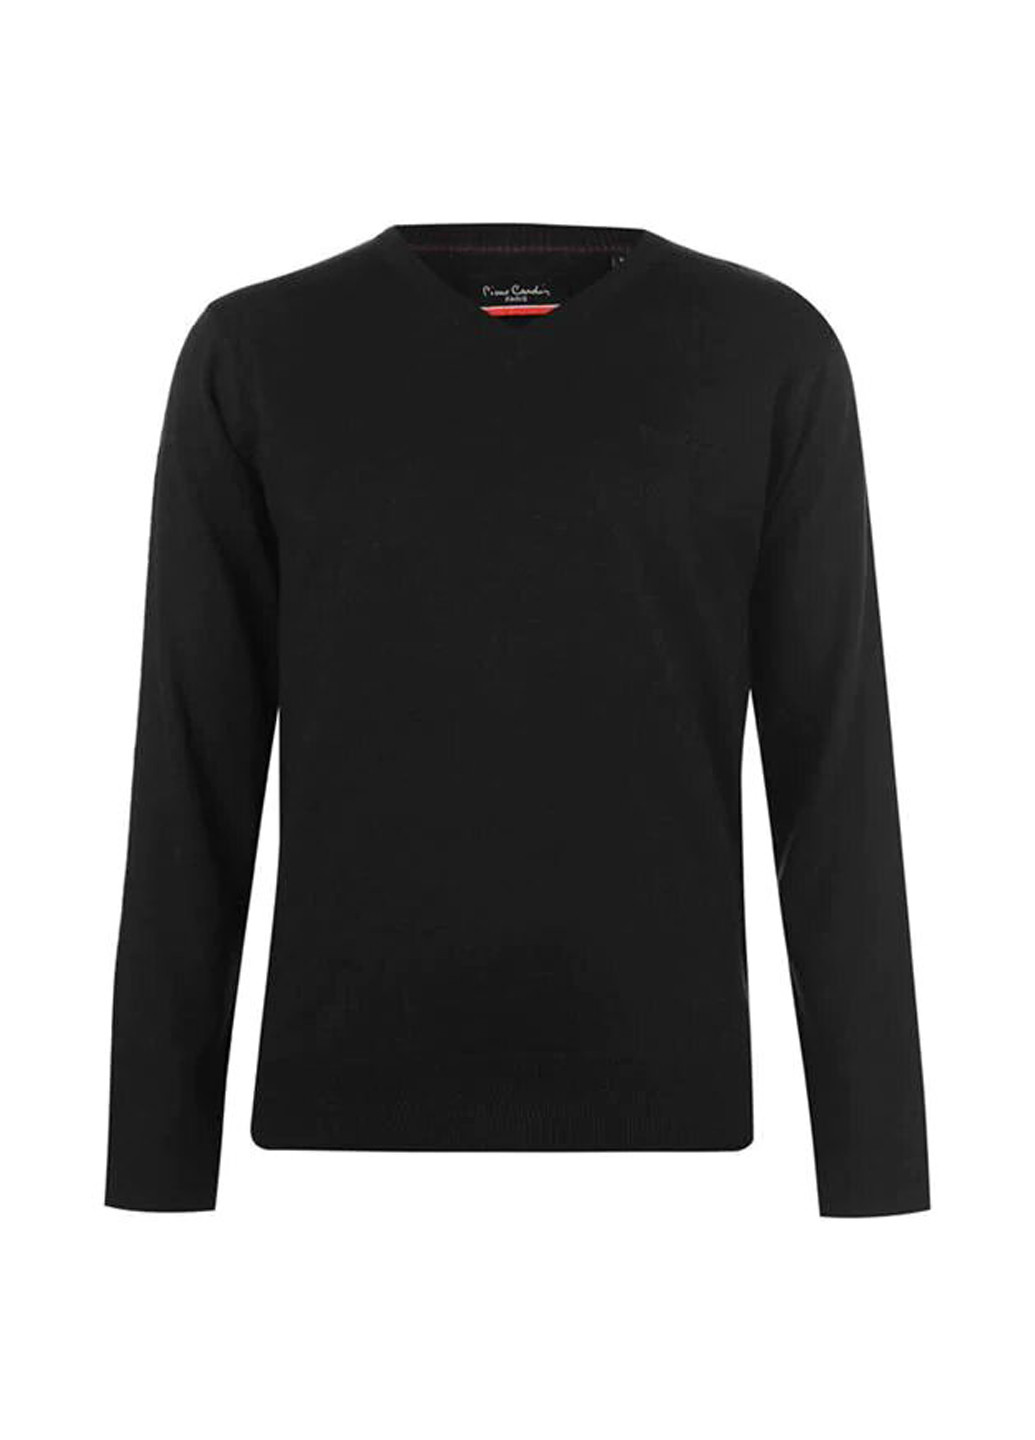 Черный демисезонный пуловер пуловер Pierre Cardin